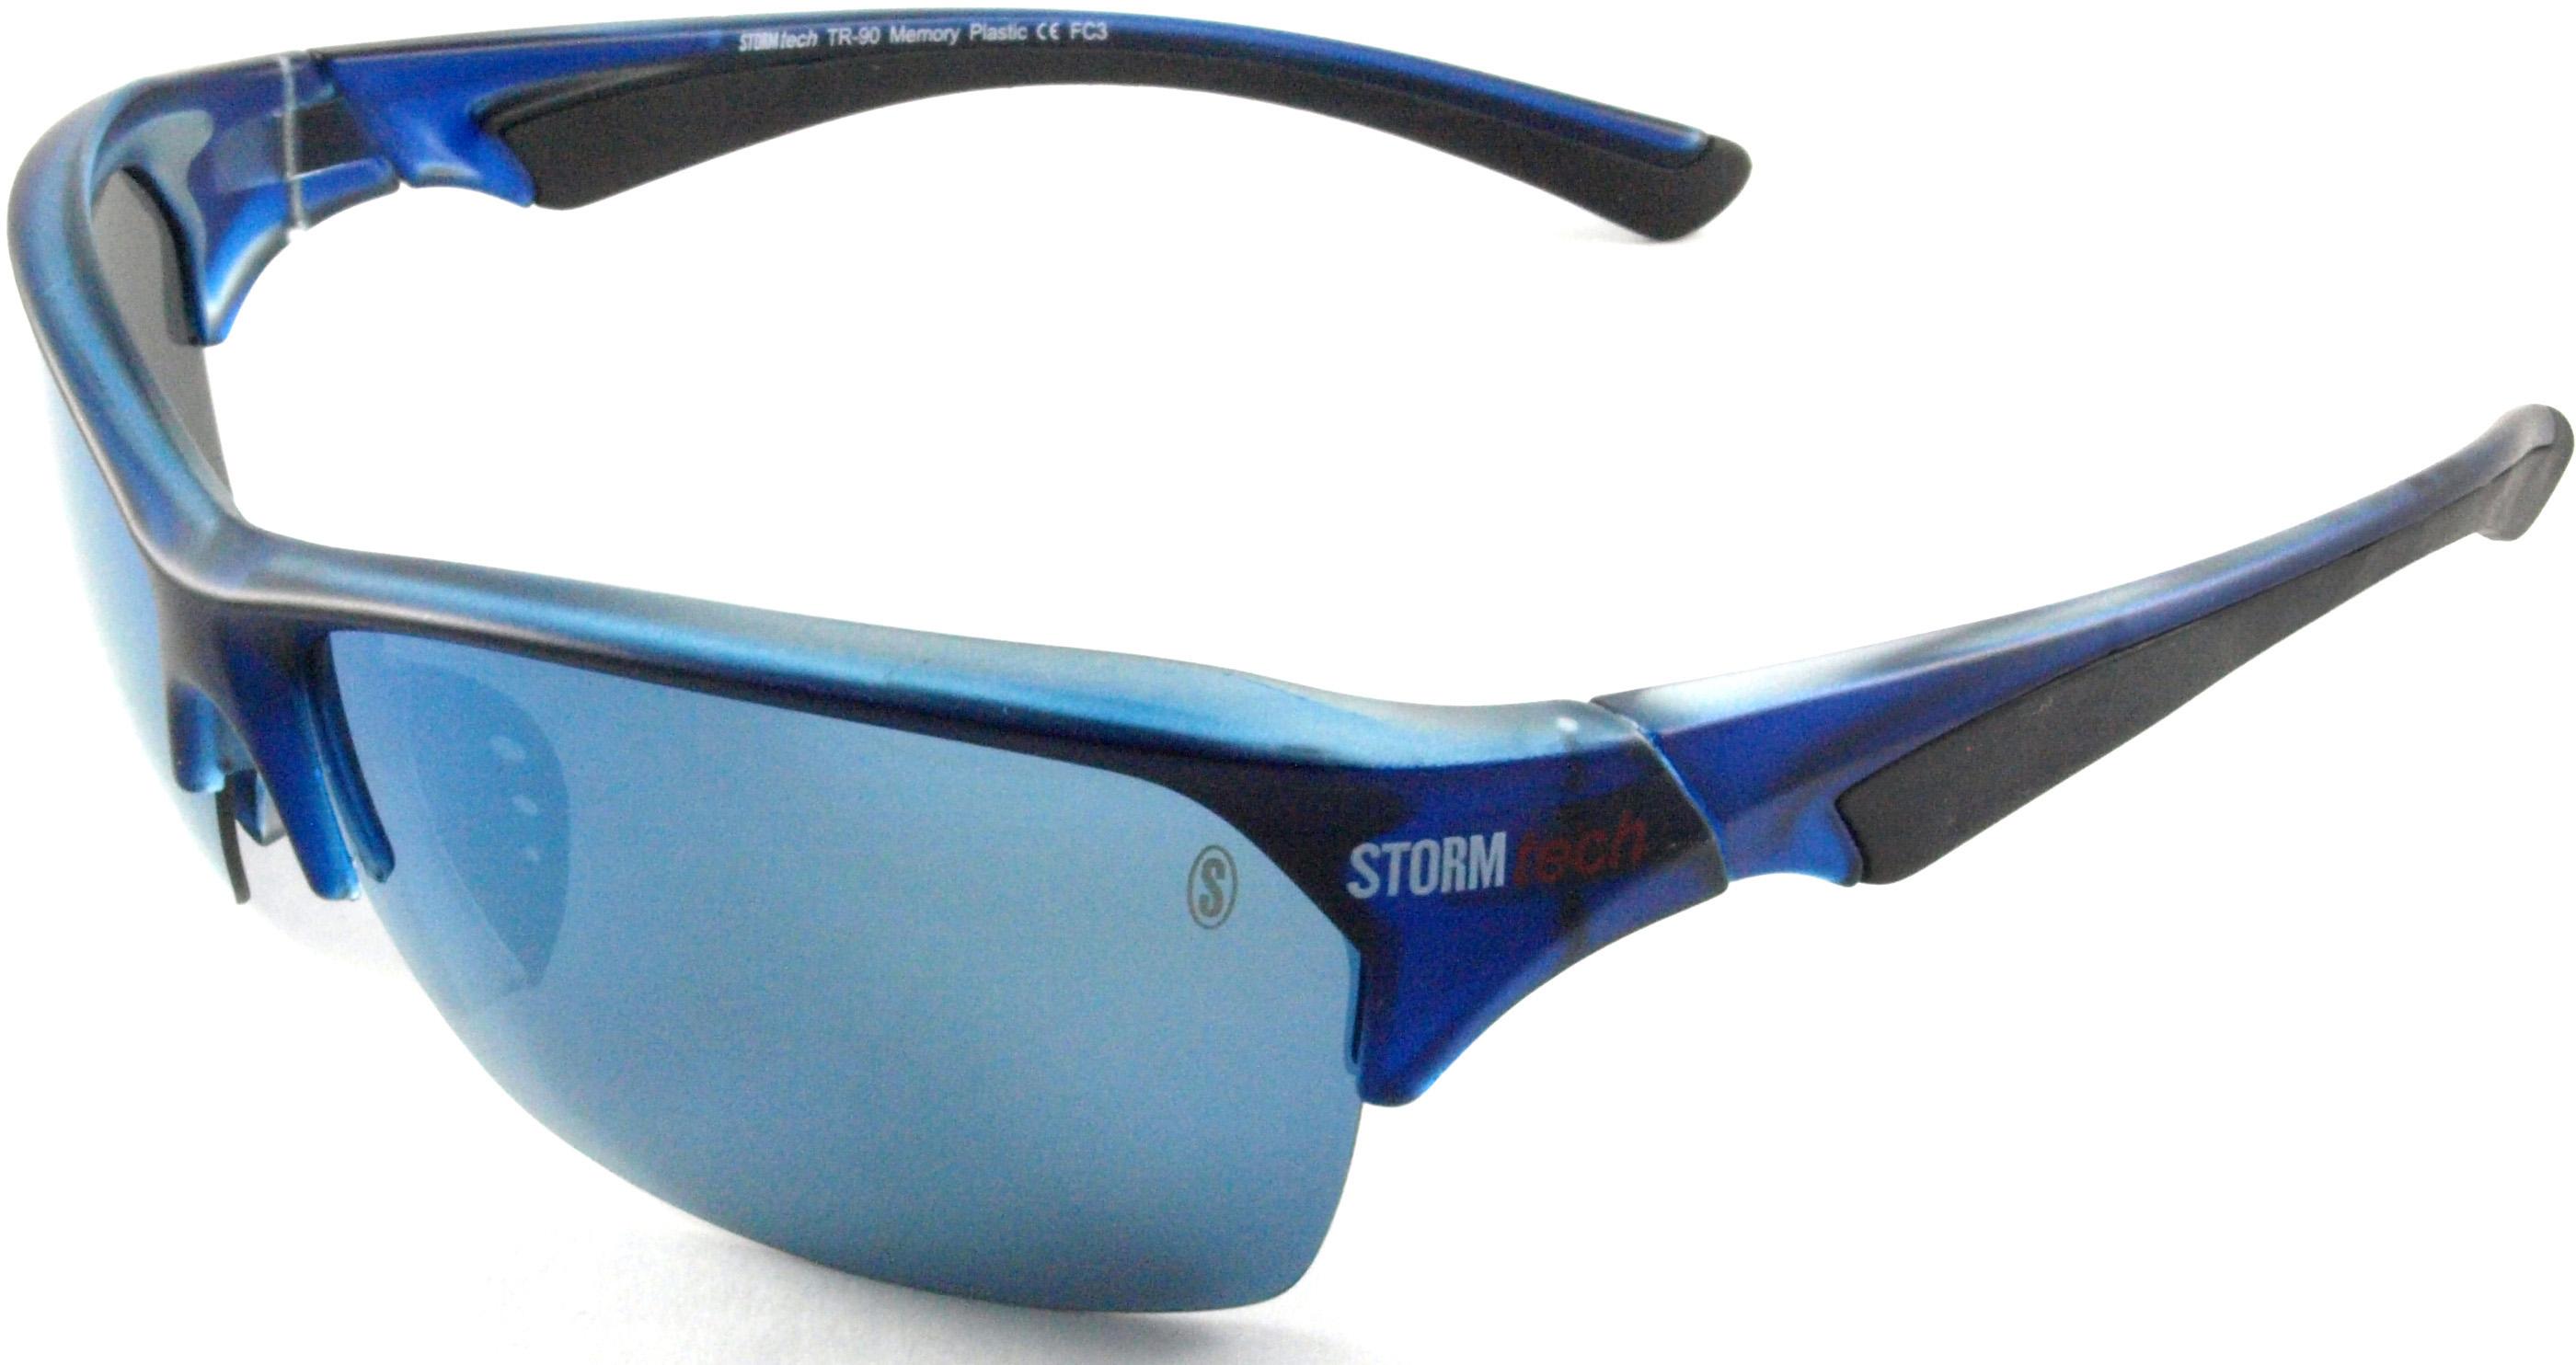 Stormtech Cleitus Sunglasses - Blue